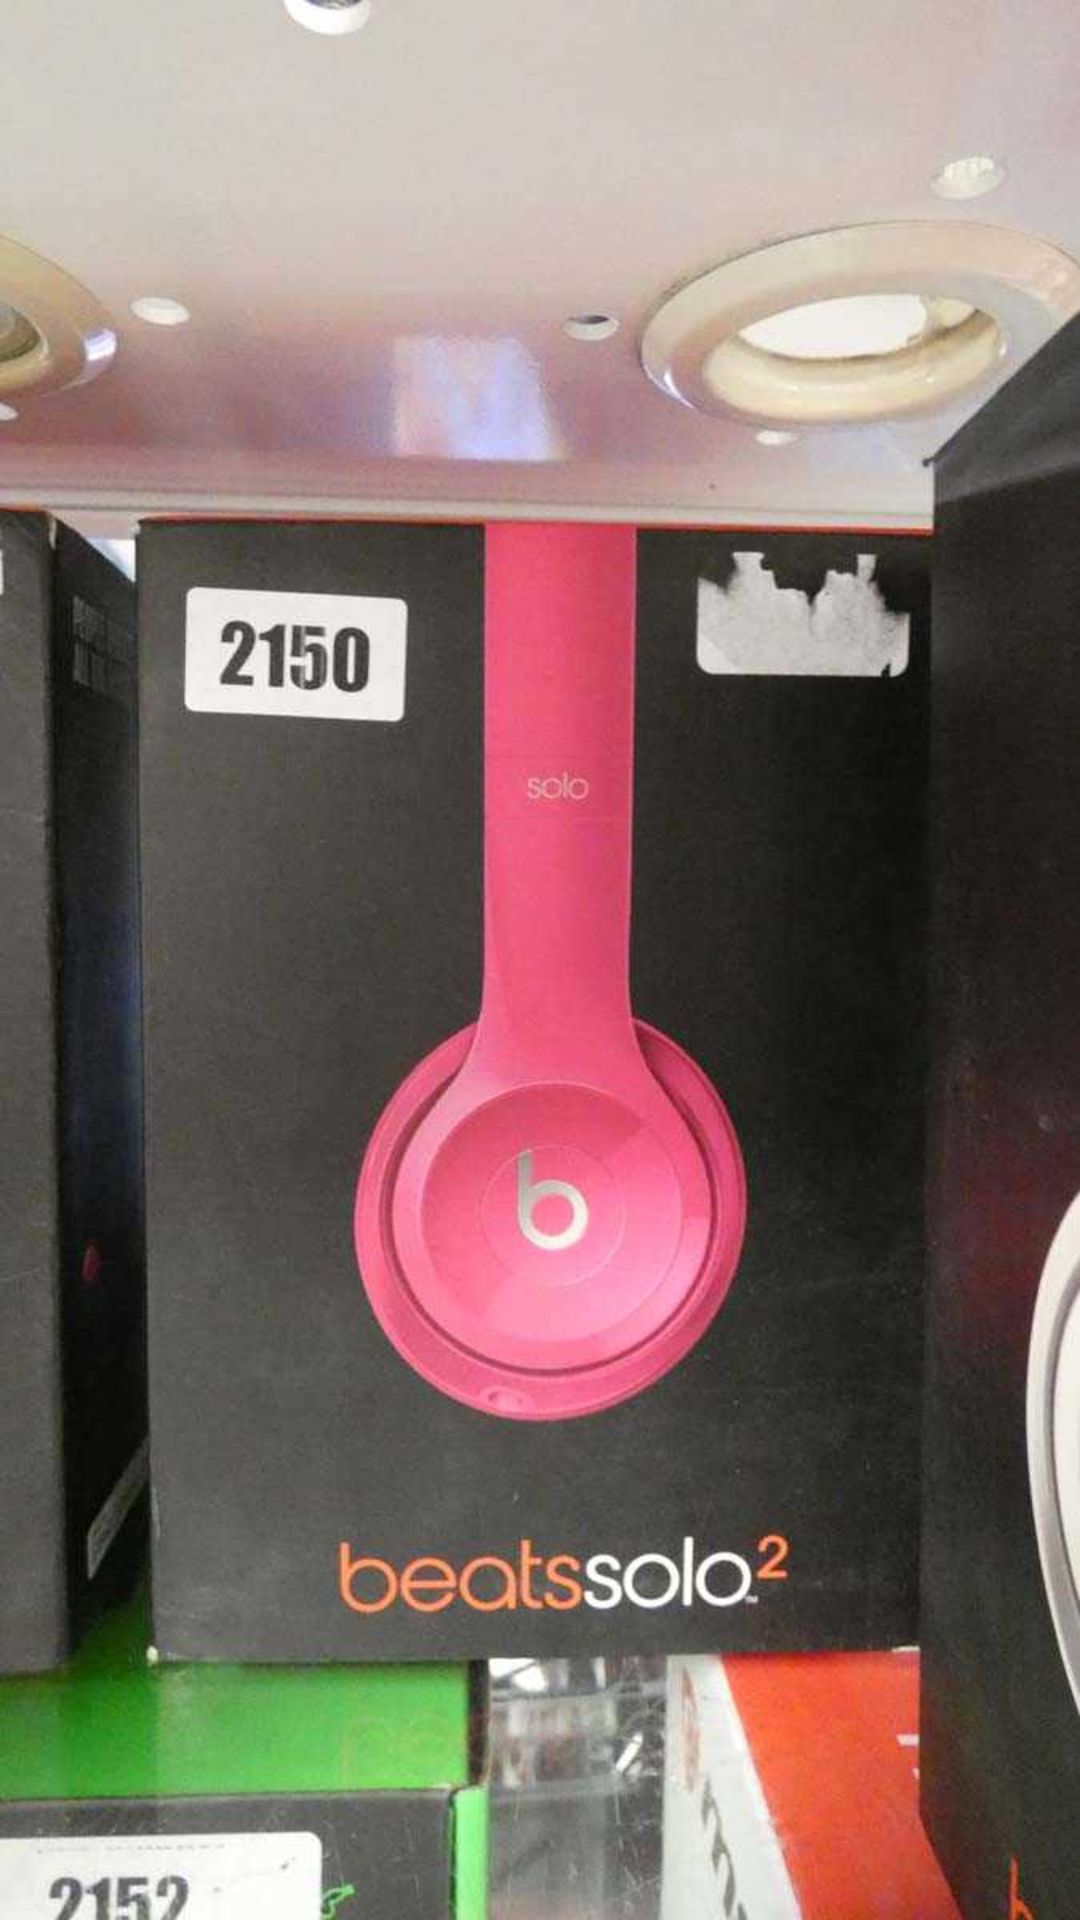 Beats Solo 2 headphones in pink